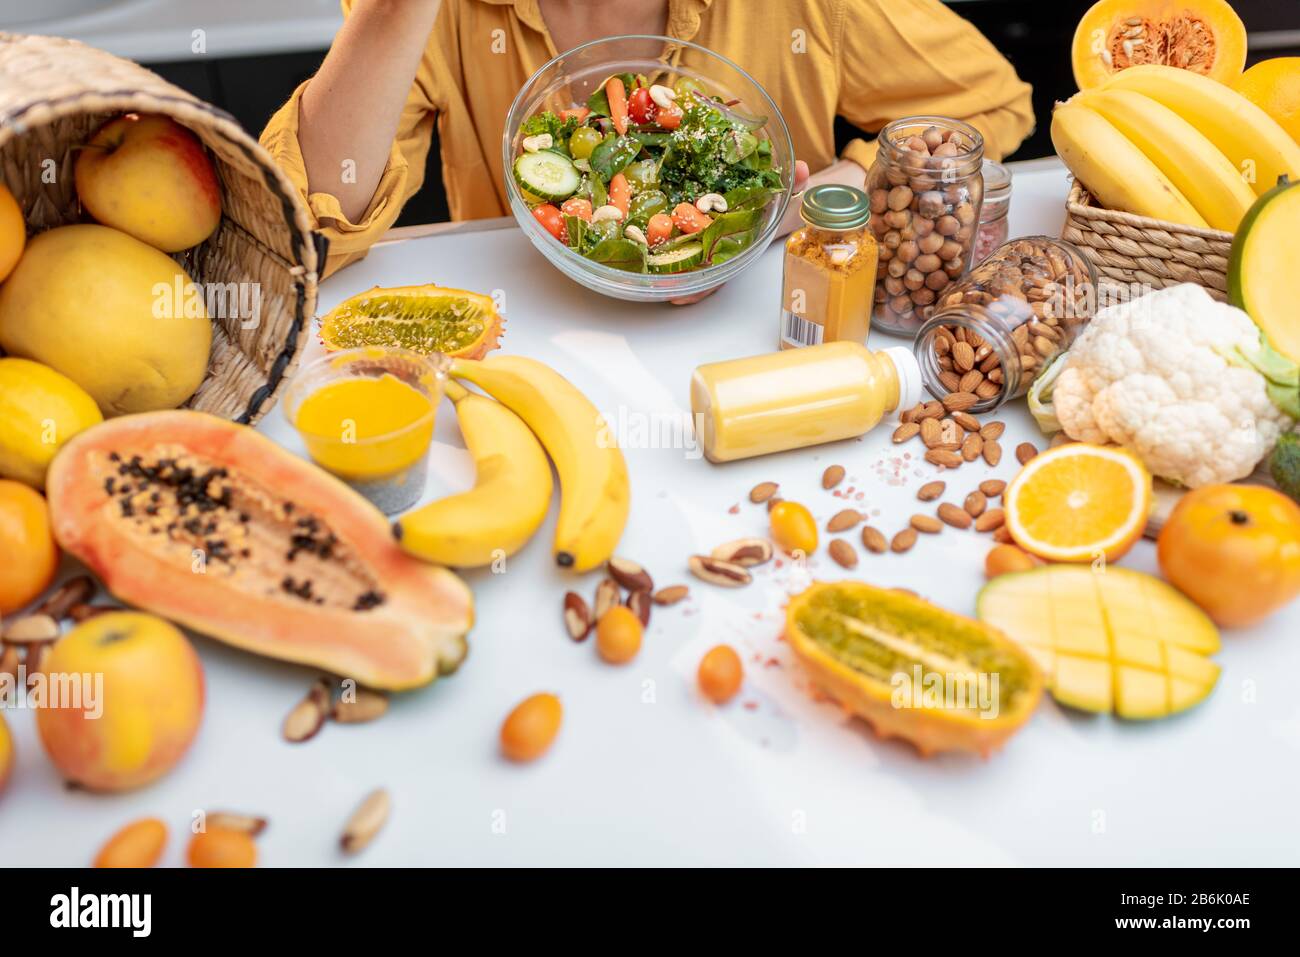 Donna che mangia insalata al tavolo pieno di verdure sane crude e frutta, vista tagliata senza faccia. Concetto di vegetarianismo, sano mangiare e benessere Foto Stock